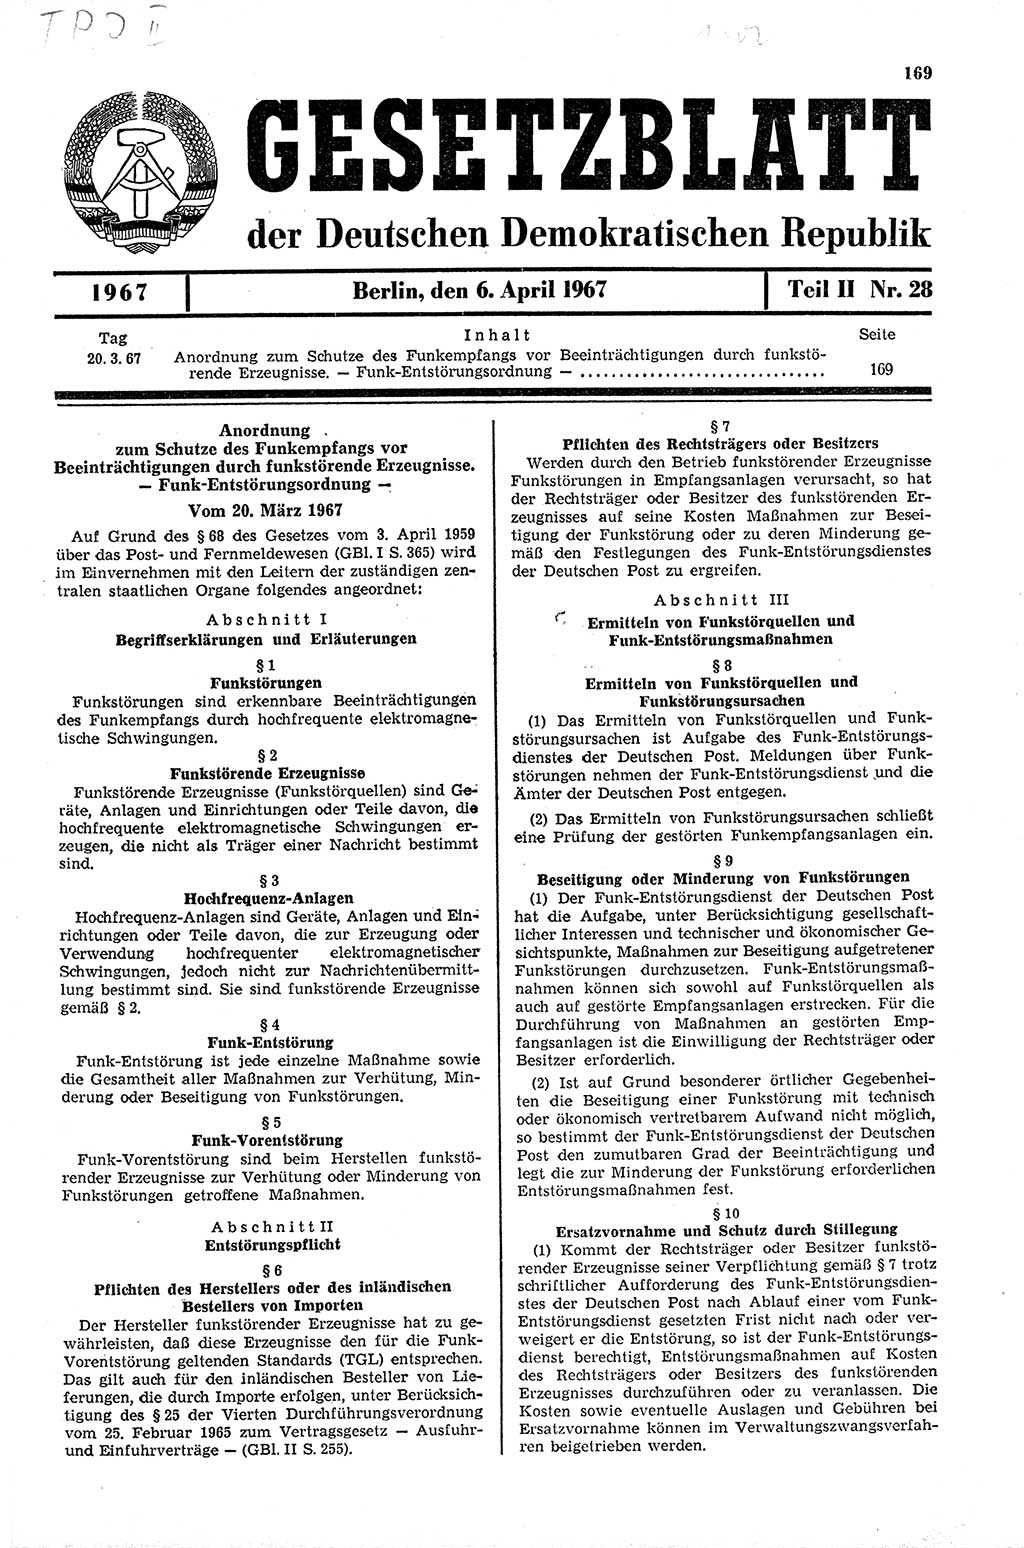 Gesetzblatt (GBl.) der Deutschen Demokratischen Republik (DDR) Teil ⅠⅠ 1967, Seite 169 (GBl. DDR ⅠⅠ 1967, S. 169)